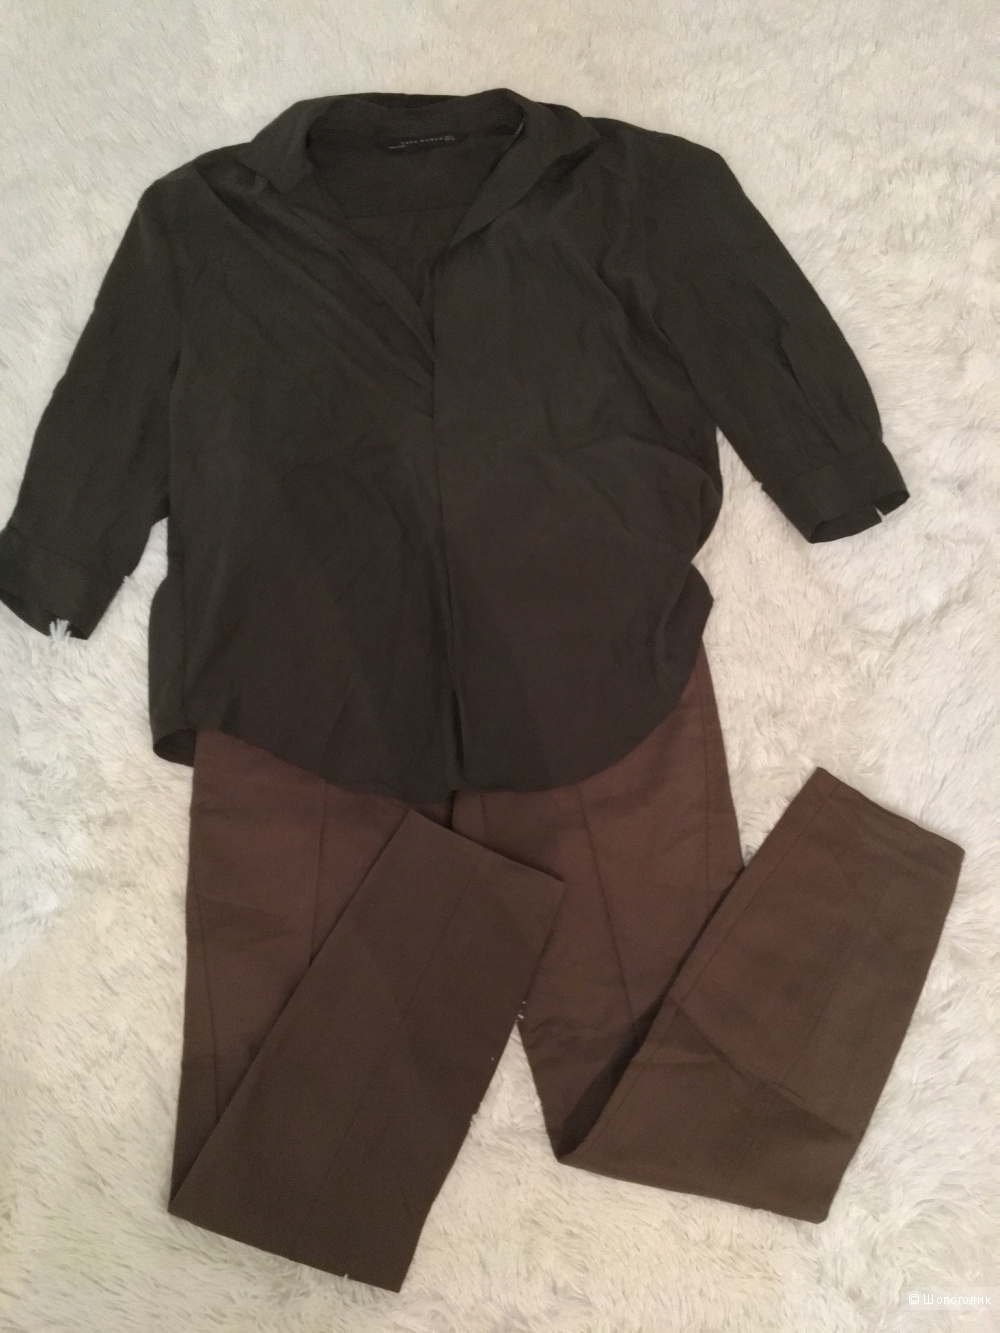 Комплект Zara брюки + блузон, размер S